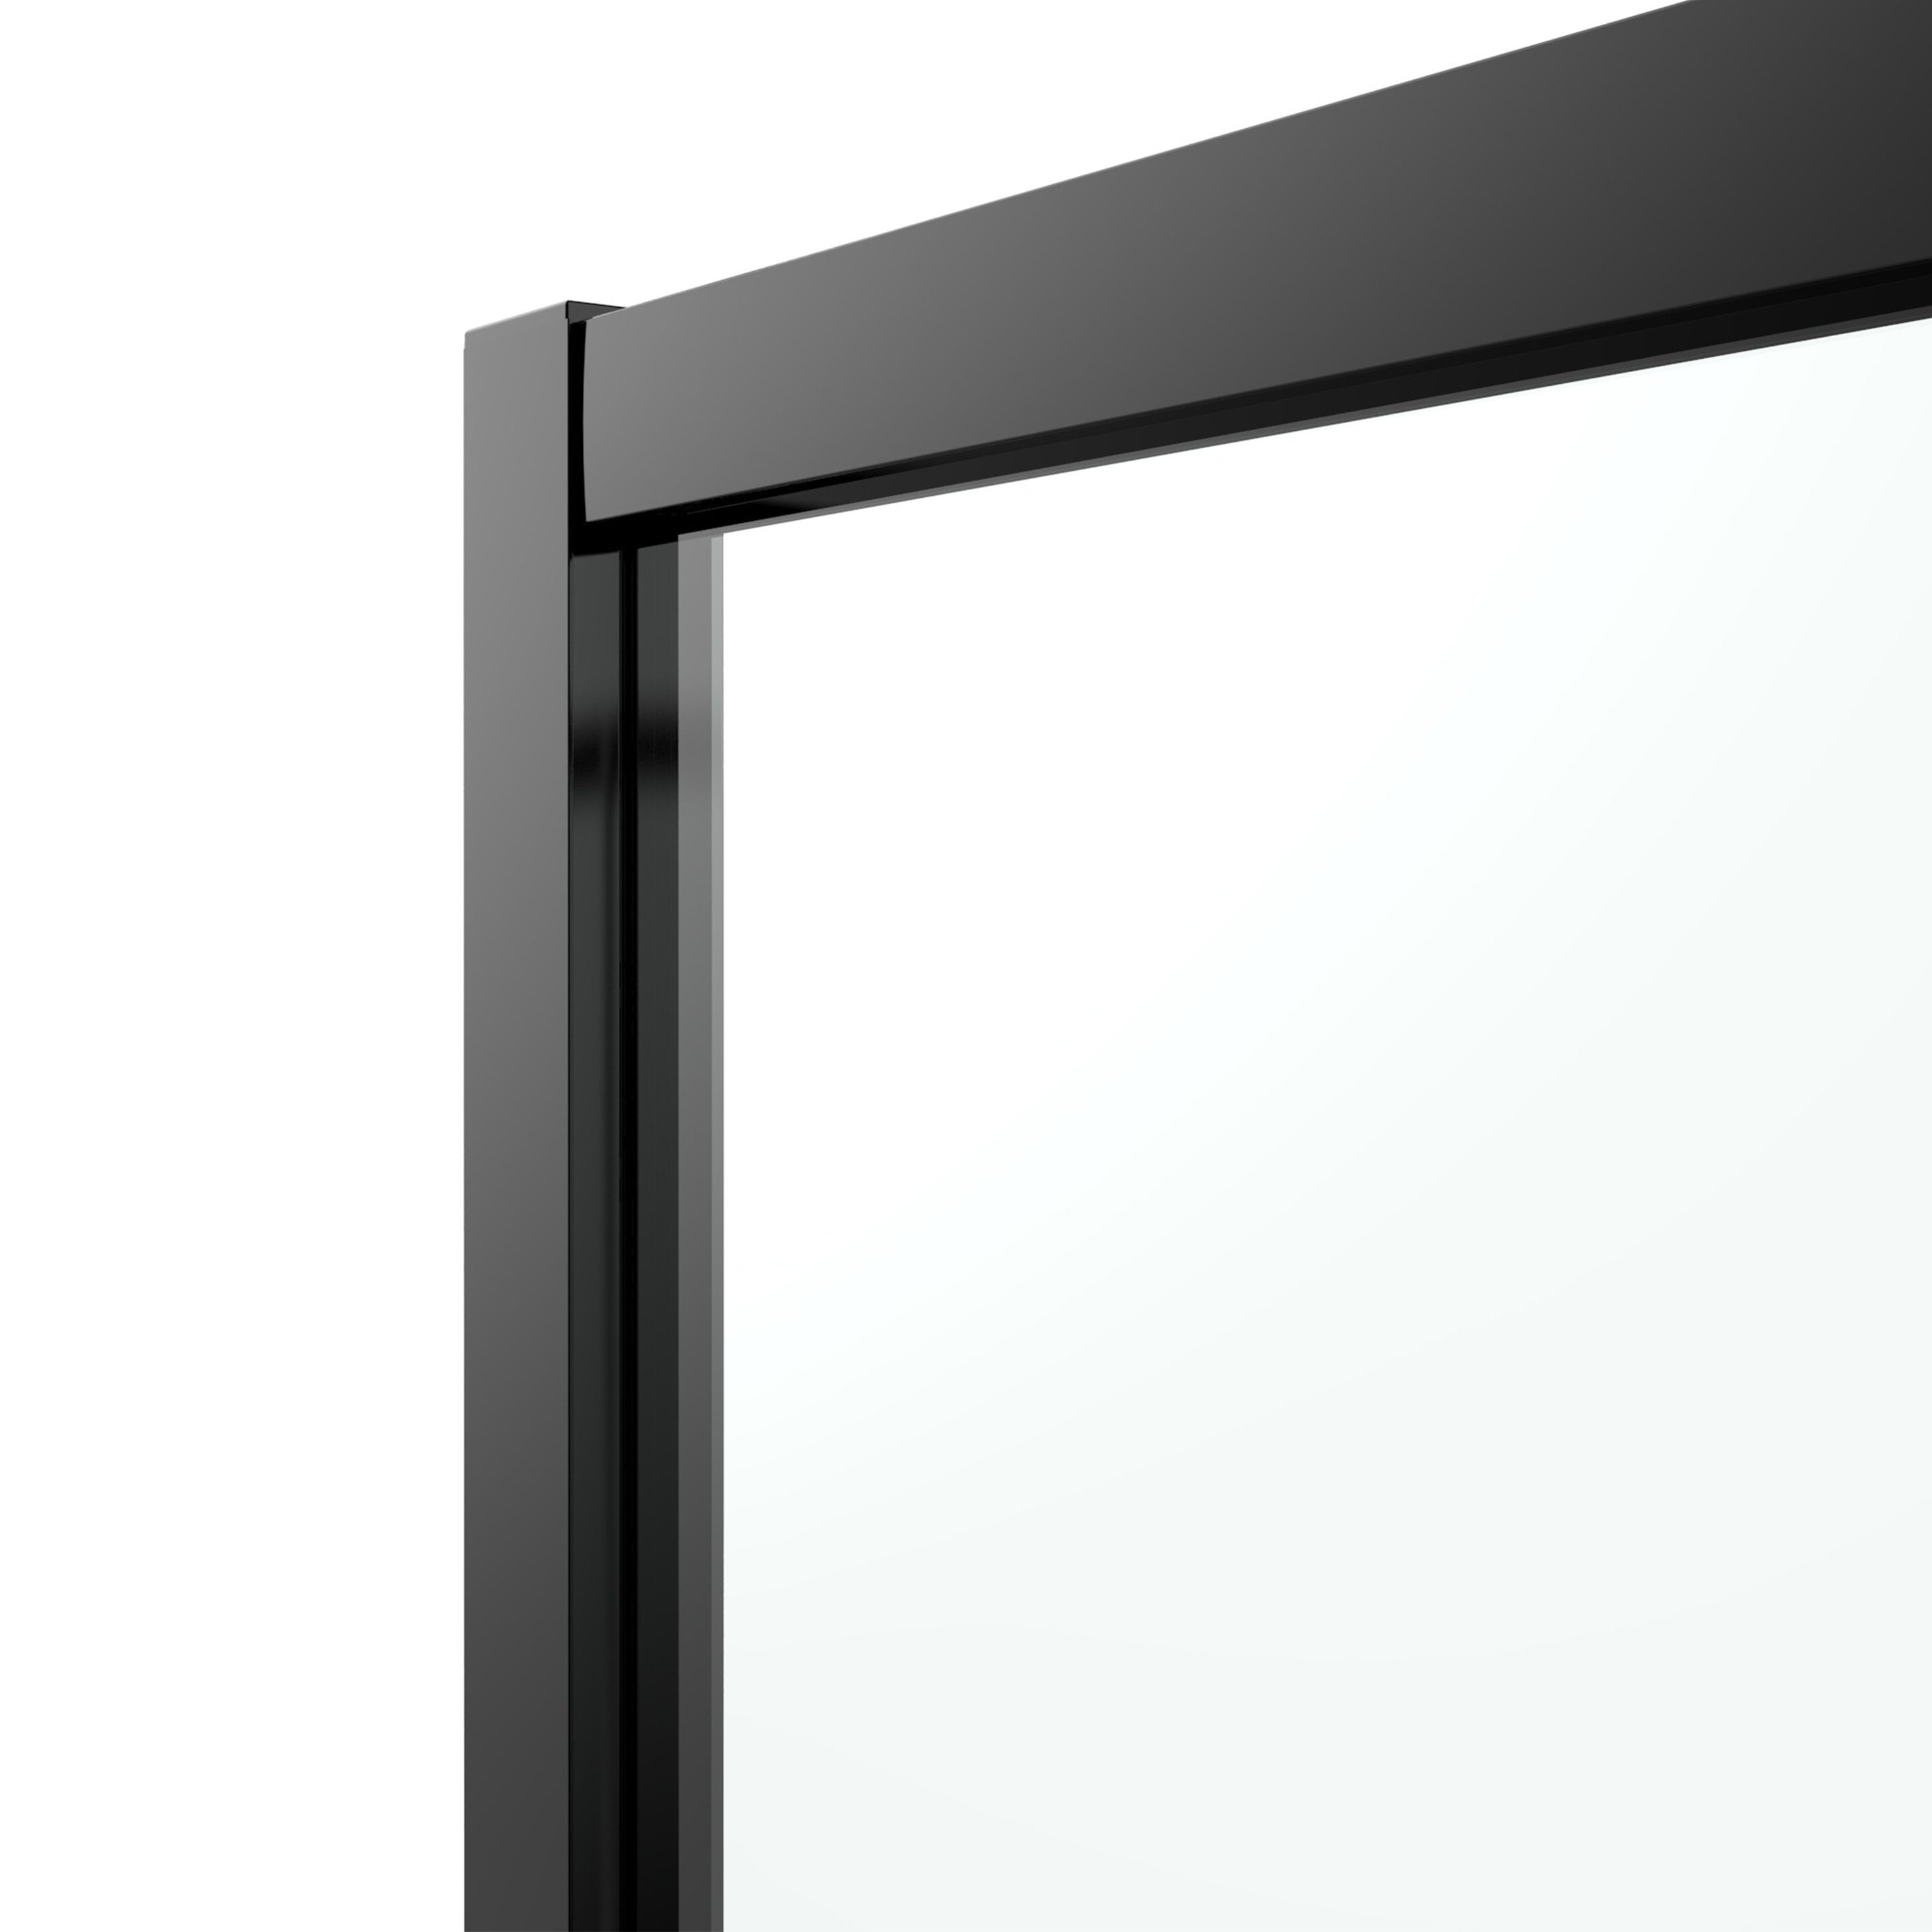 GoodHome Ledava Clear glass Quadrant Shower enclosure - Corner entry double sliding door (W)80cm (D)80cm